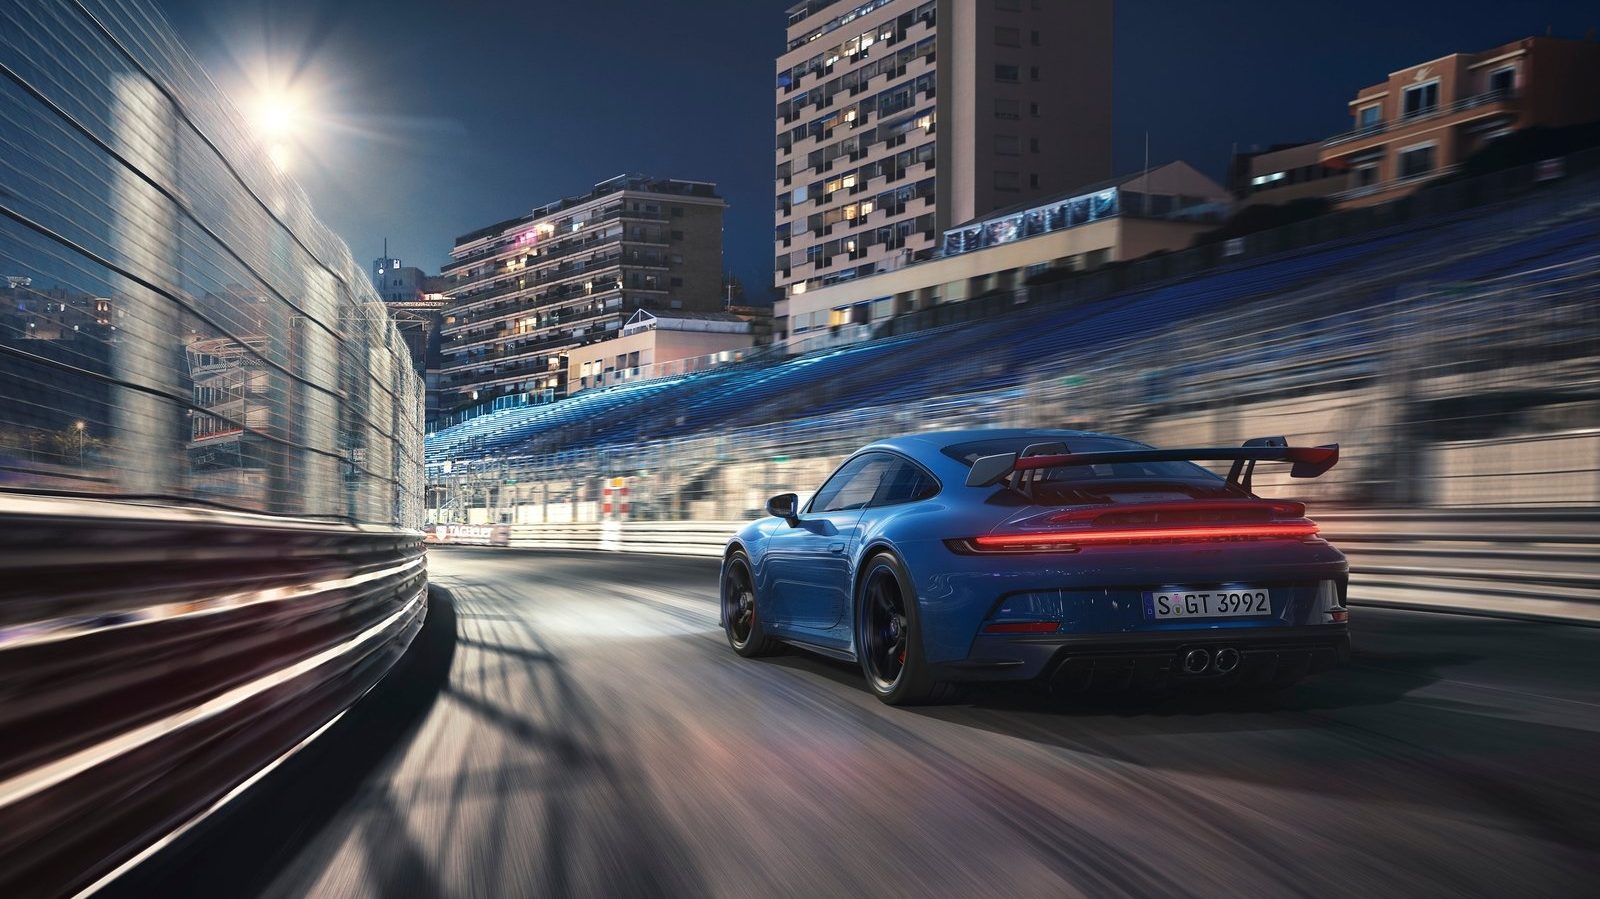 An image of a blue 2022 Porsche 911 GT3 on a track.